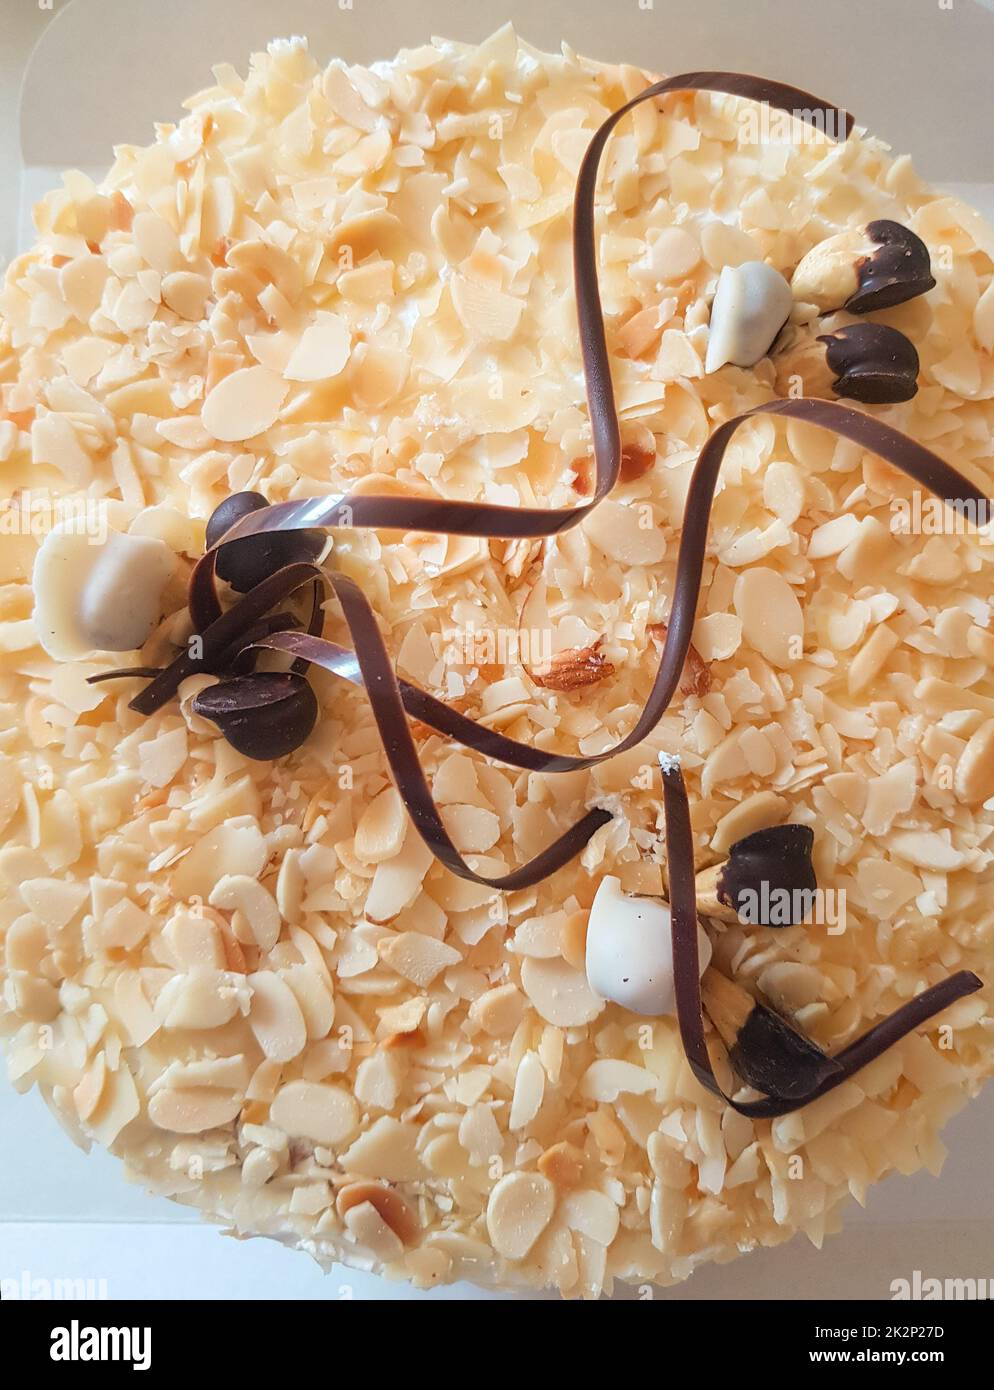 Un gâteau aux amandes rond entier décoré de rayures au chocolat et de noix. Mets sucrés. Dessert sucré. La nourriture. Gros plan Banque D'Images